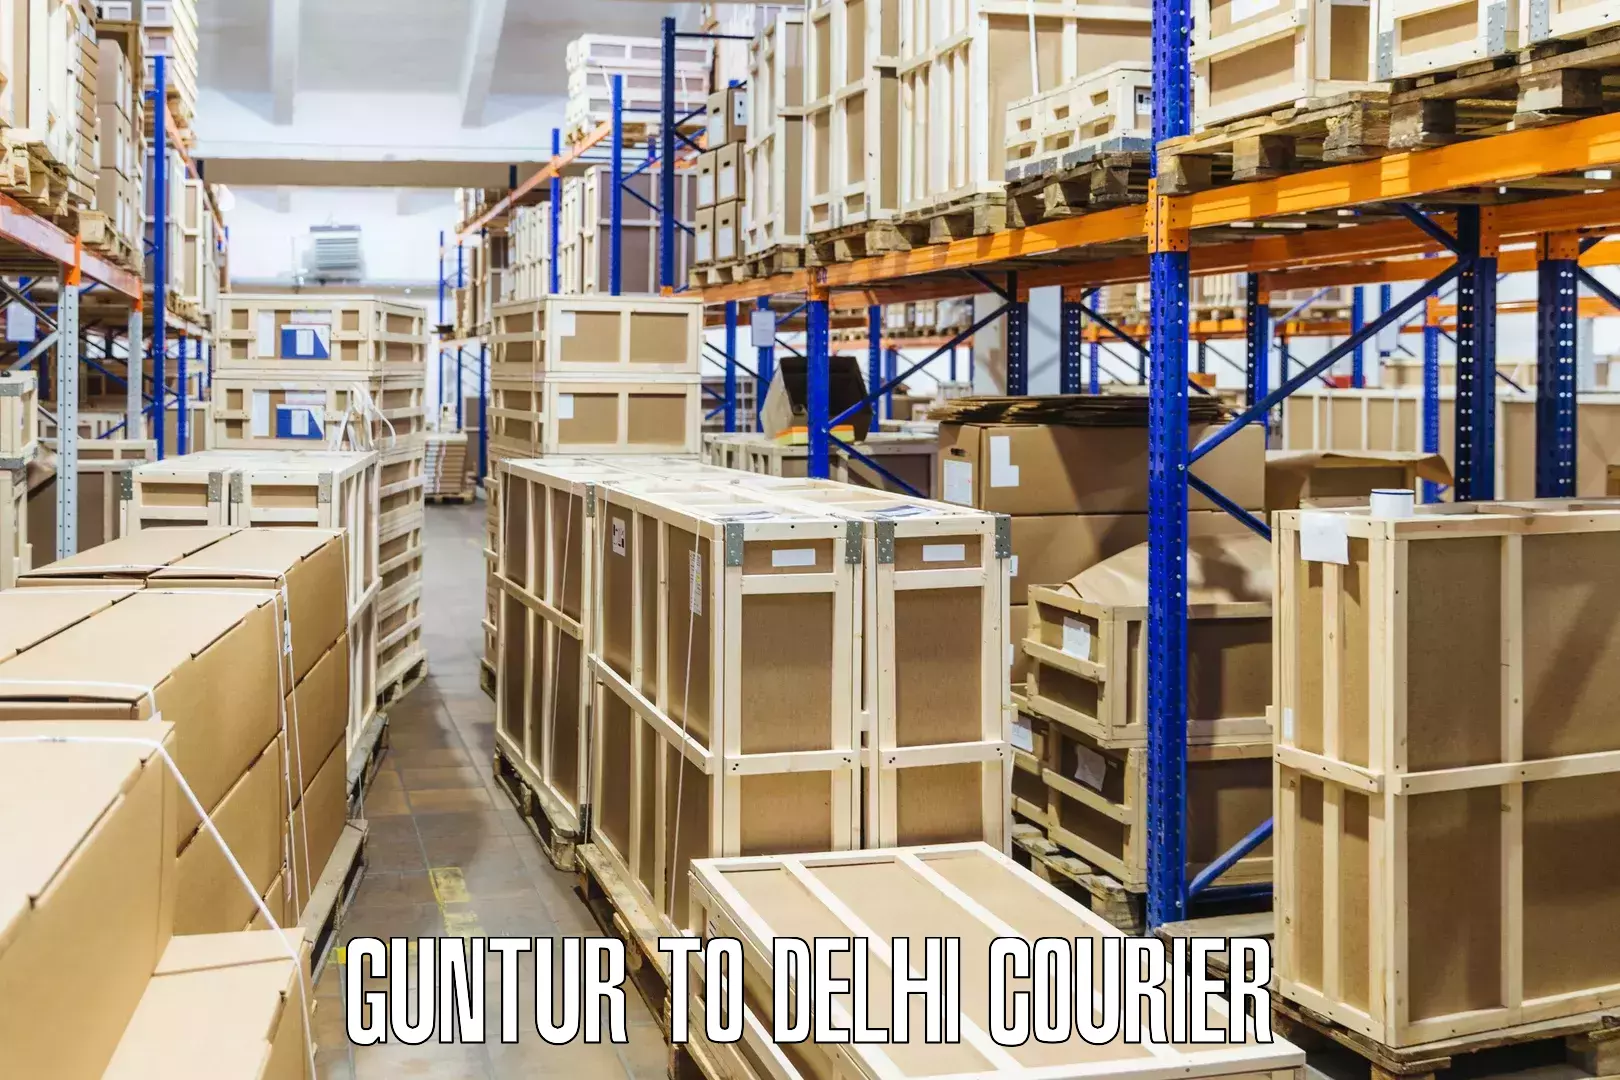 Large package courier Guntur to Krishna Nagar